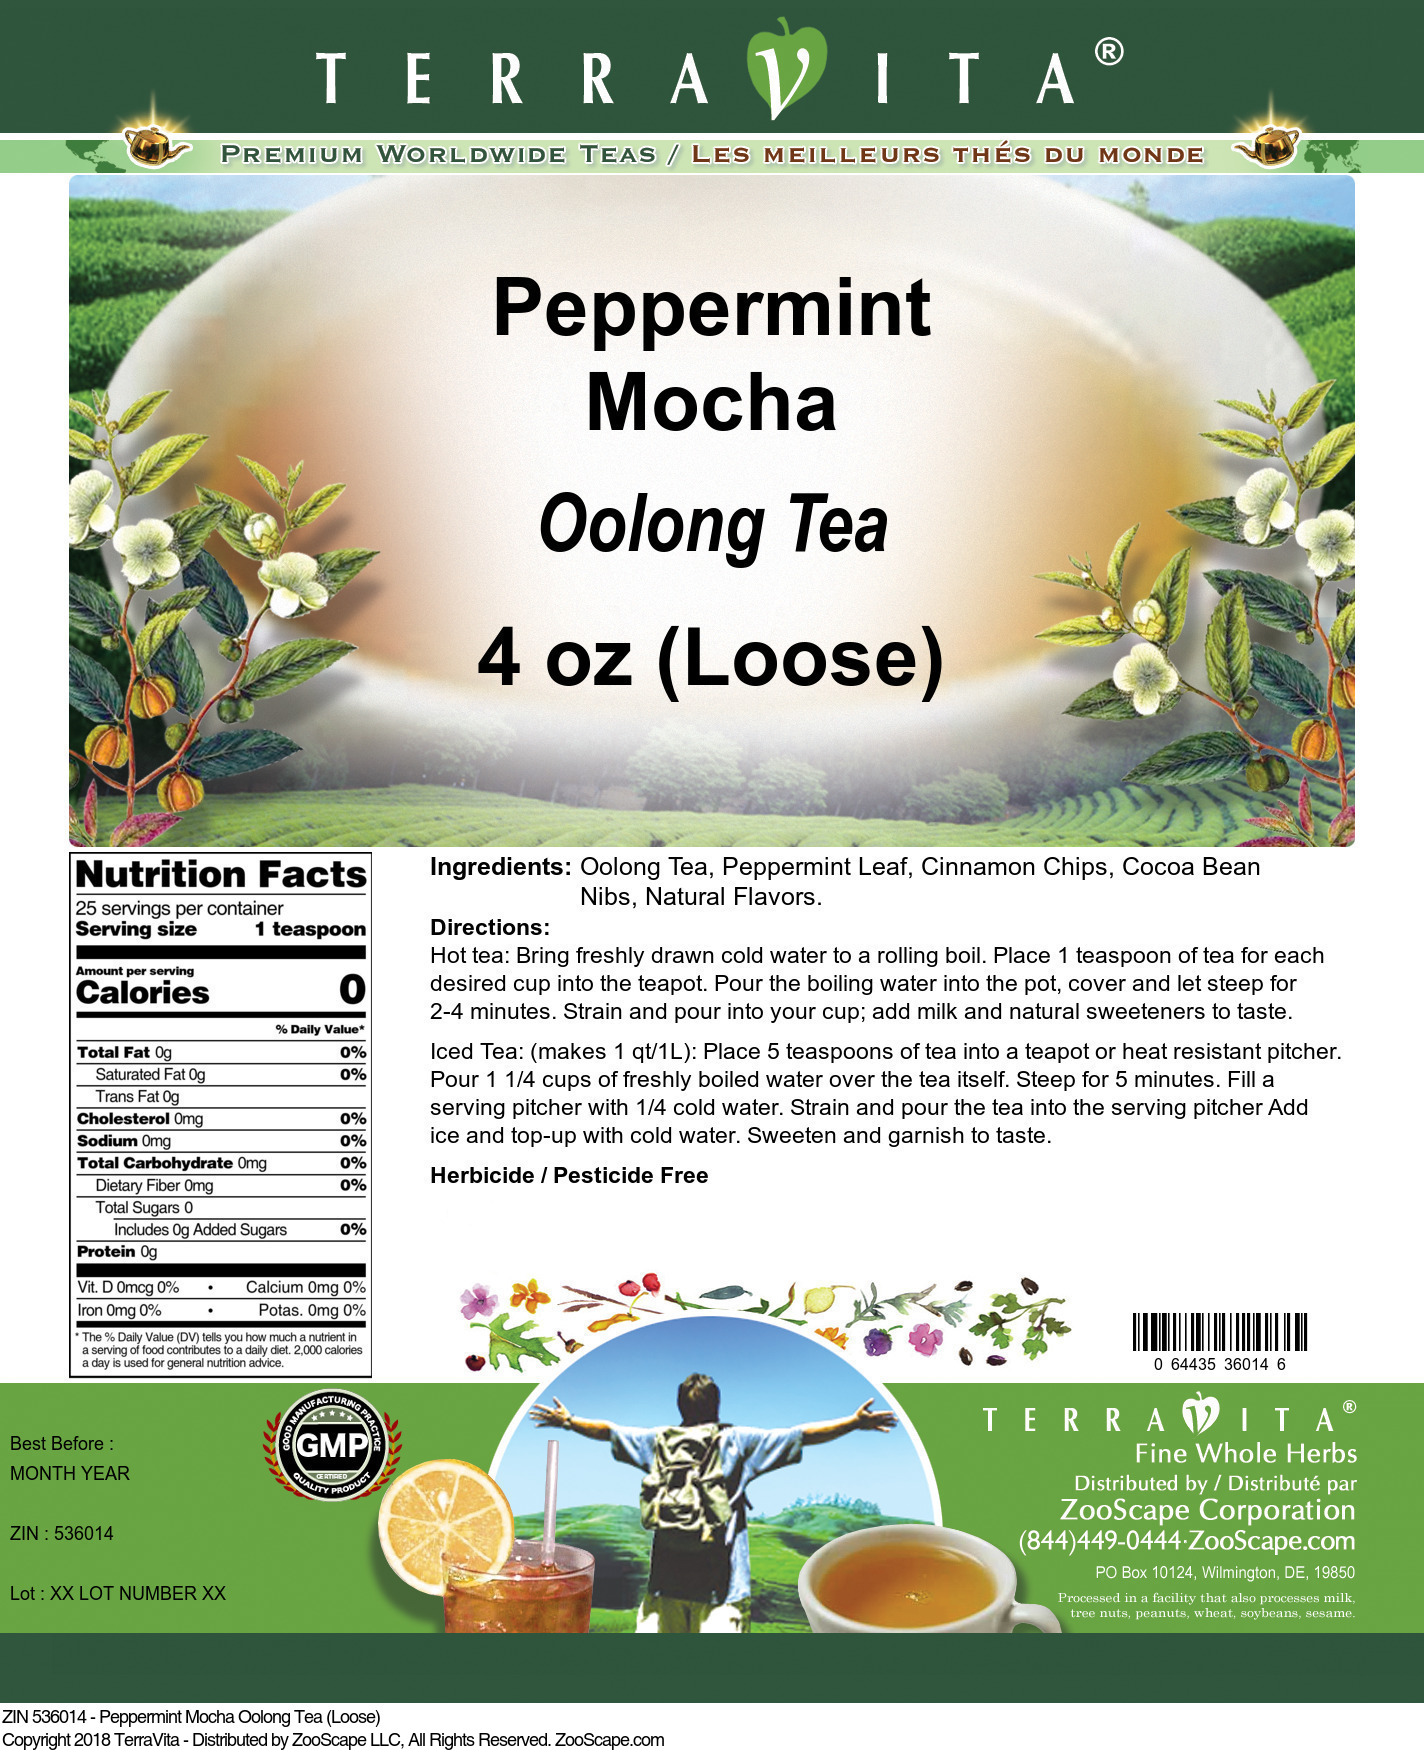 Peppermint Mocha Oolong Tea (Loose) - Label